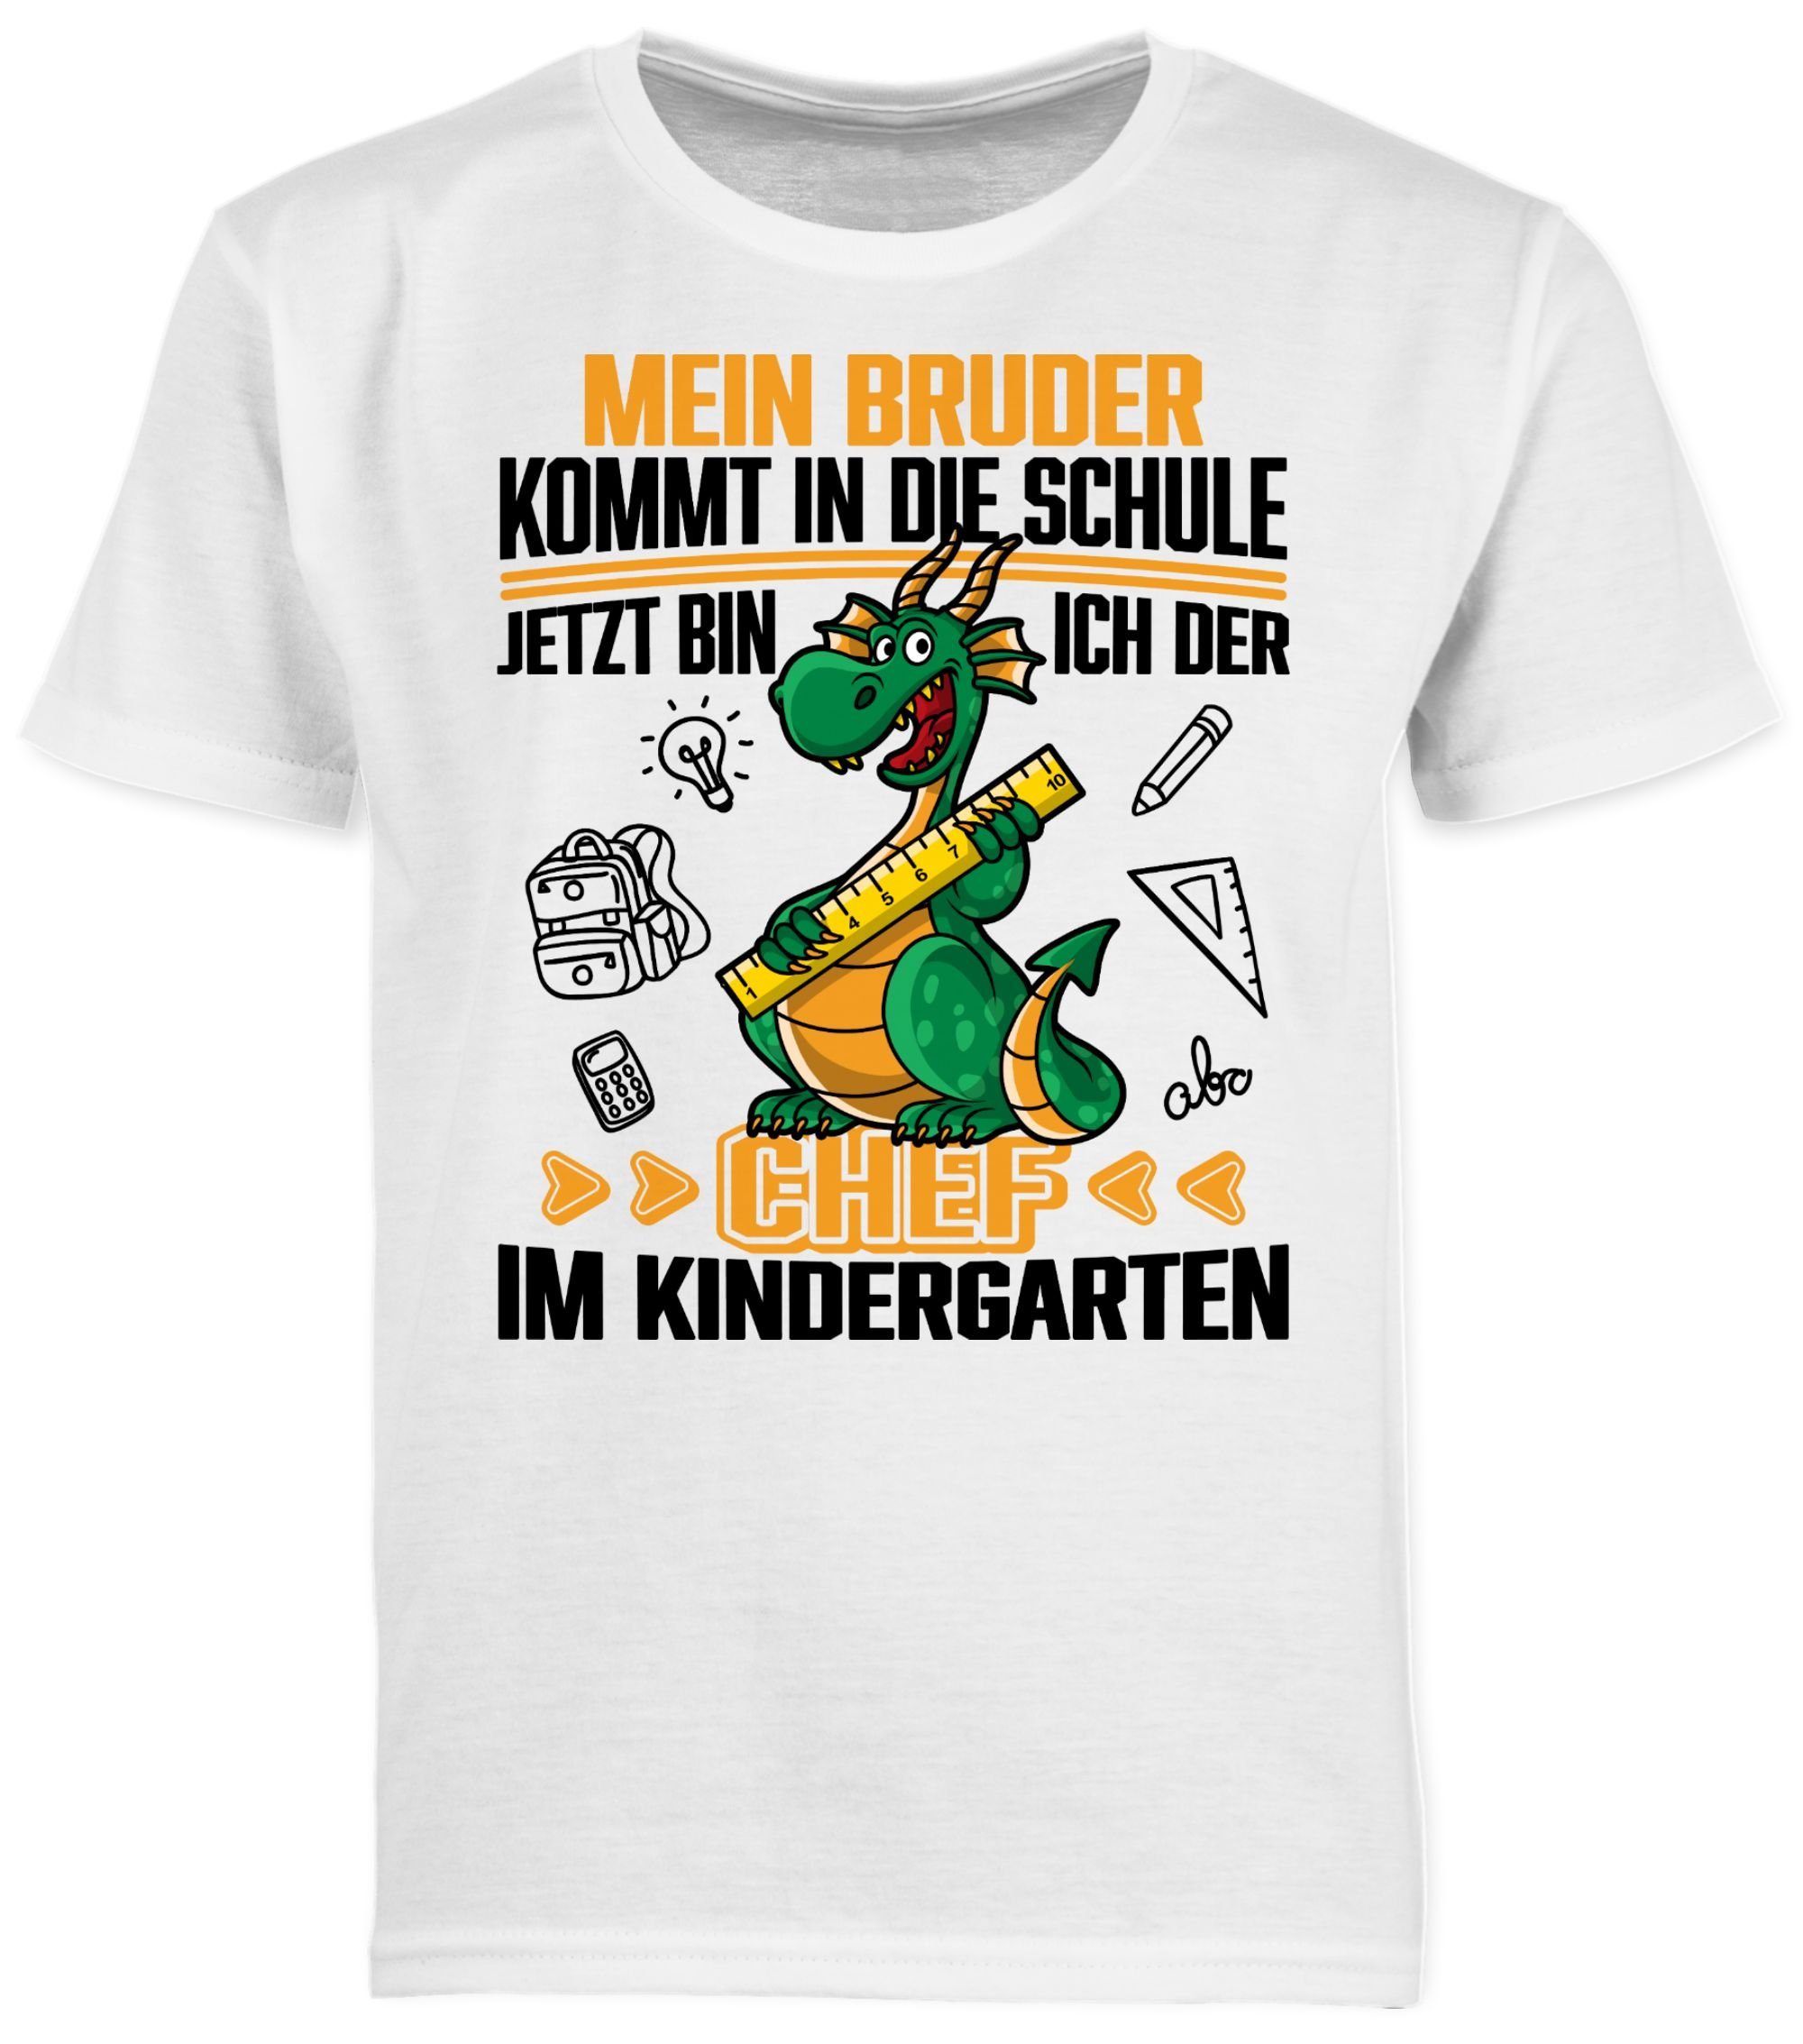 T-Shirt der 3 Kindergarten ich die Schule! in Mein Chef Jetzt Weiß Hallo kommt bin Shirtracer im Kindergarte Bruder